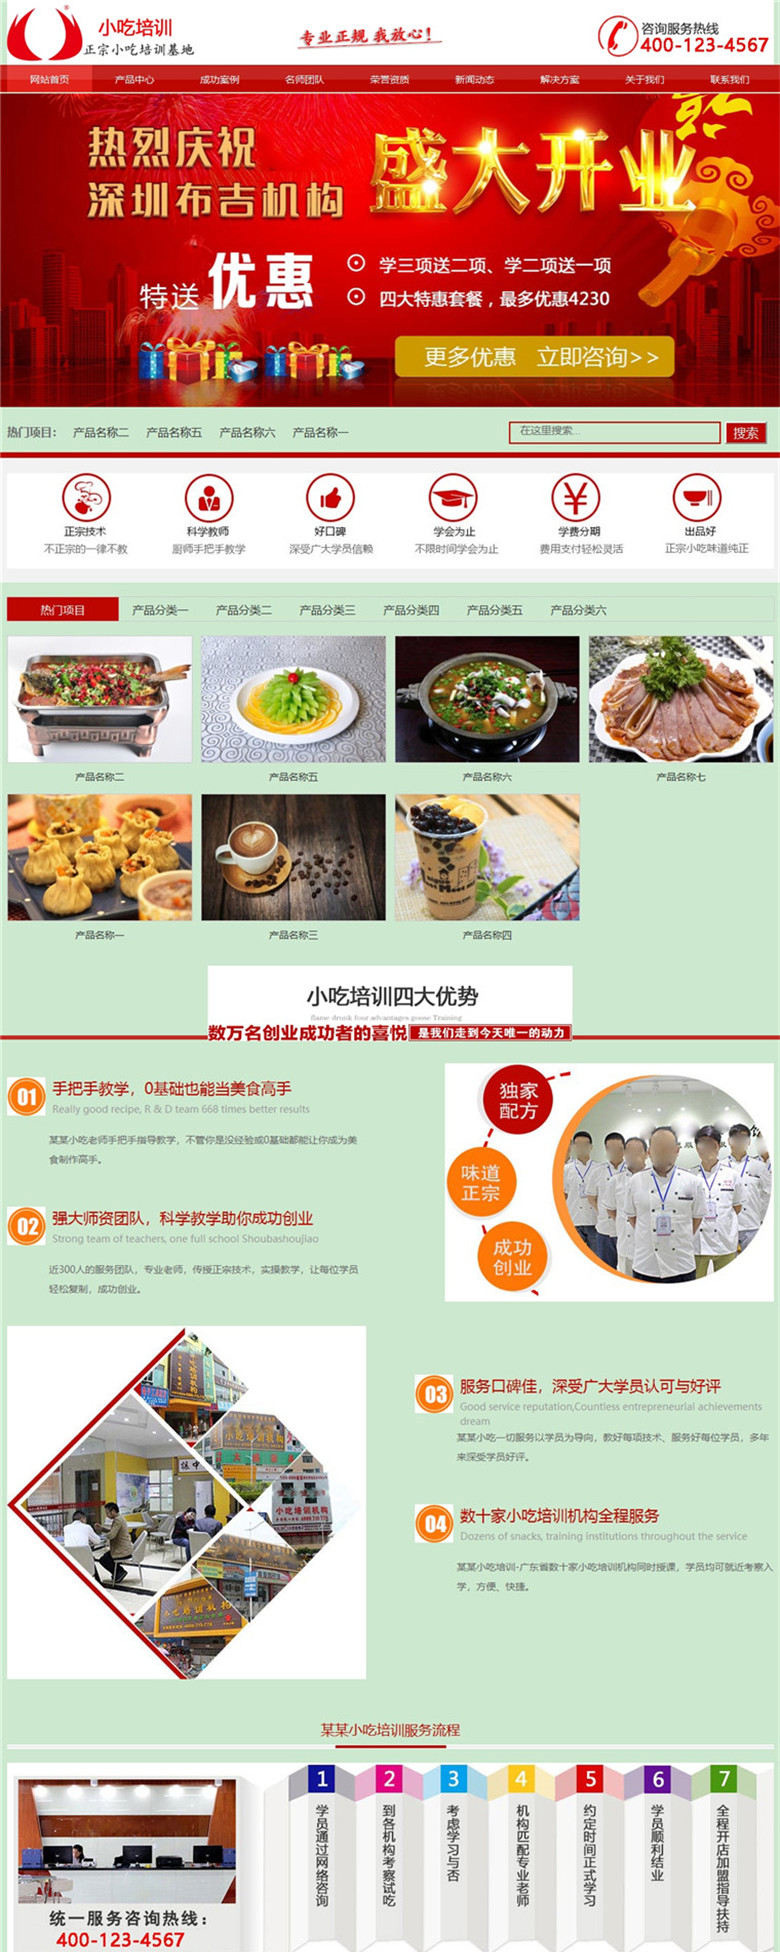 地方小吃餐饮管理加盟企业公司类网站制作_网站建设模板演示图